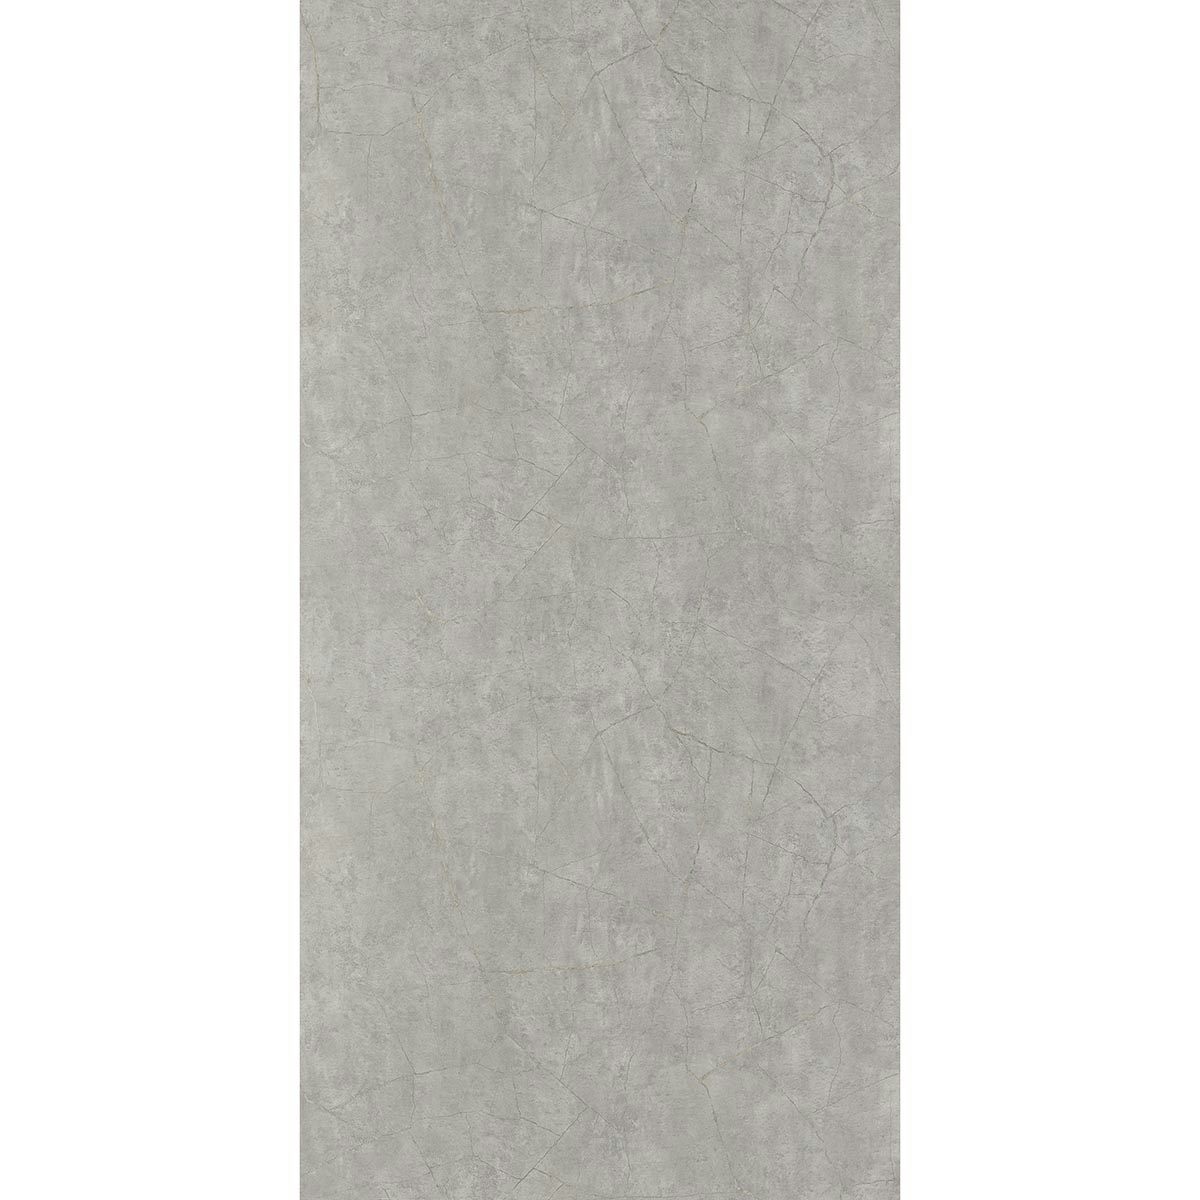 Showerwall Silver Slate Matt shower wall panel 1200 x 2440